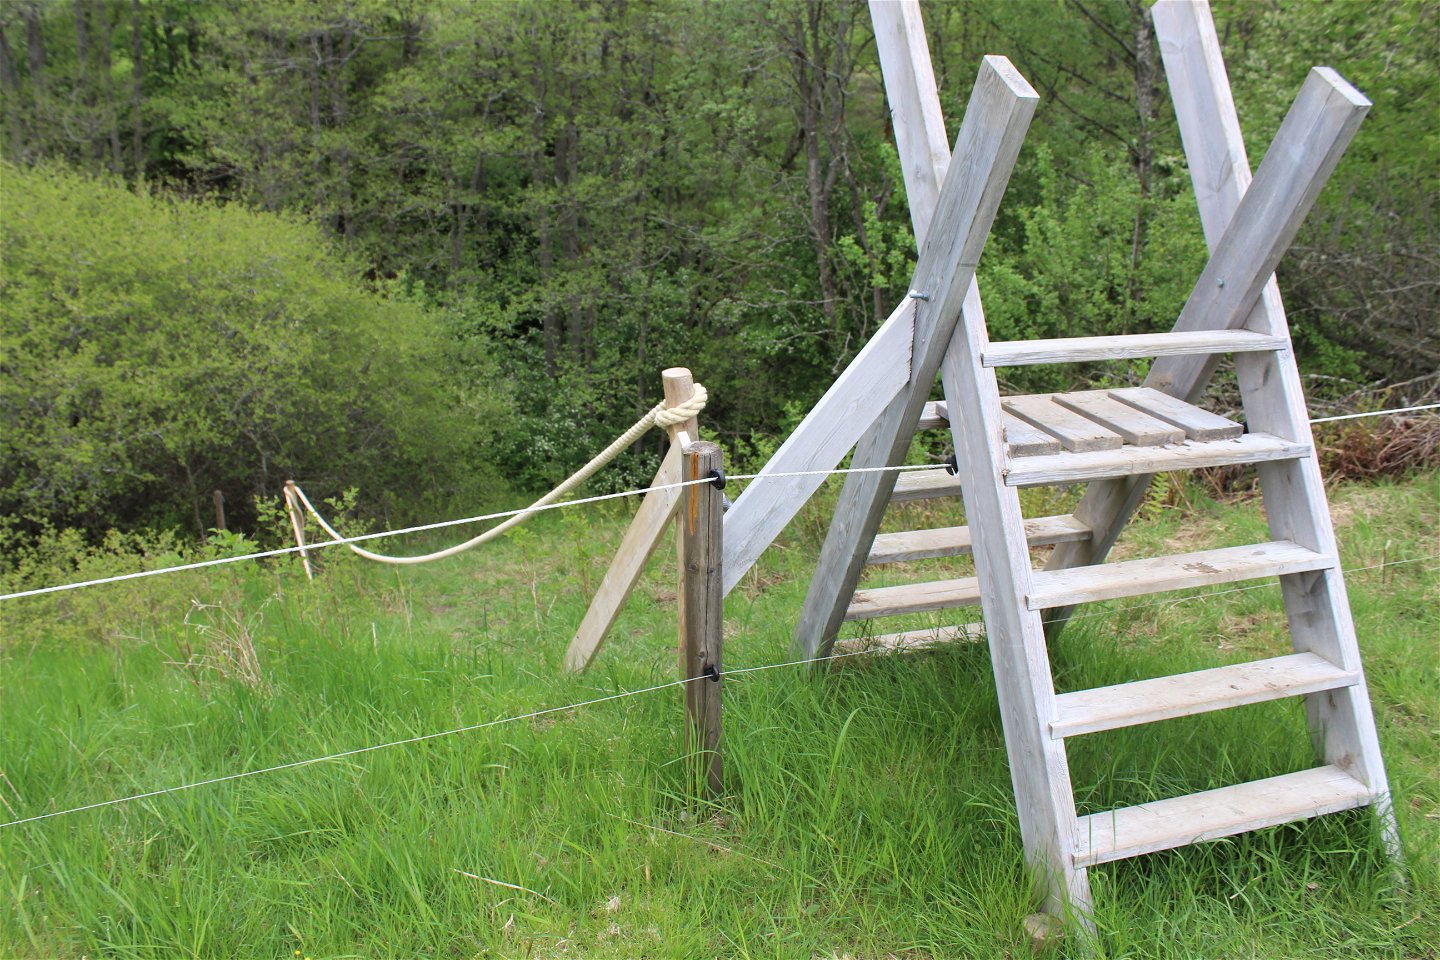 Stängselövergång och handräcken av rep som ger stadga vid branta och hala partier längs stigen.